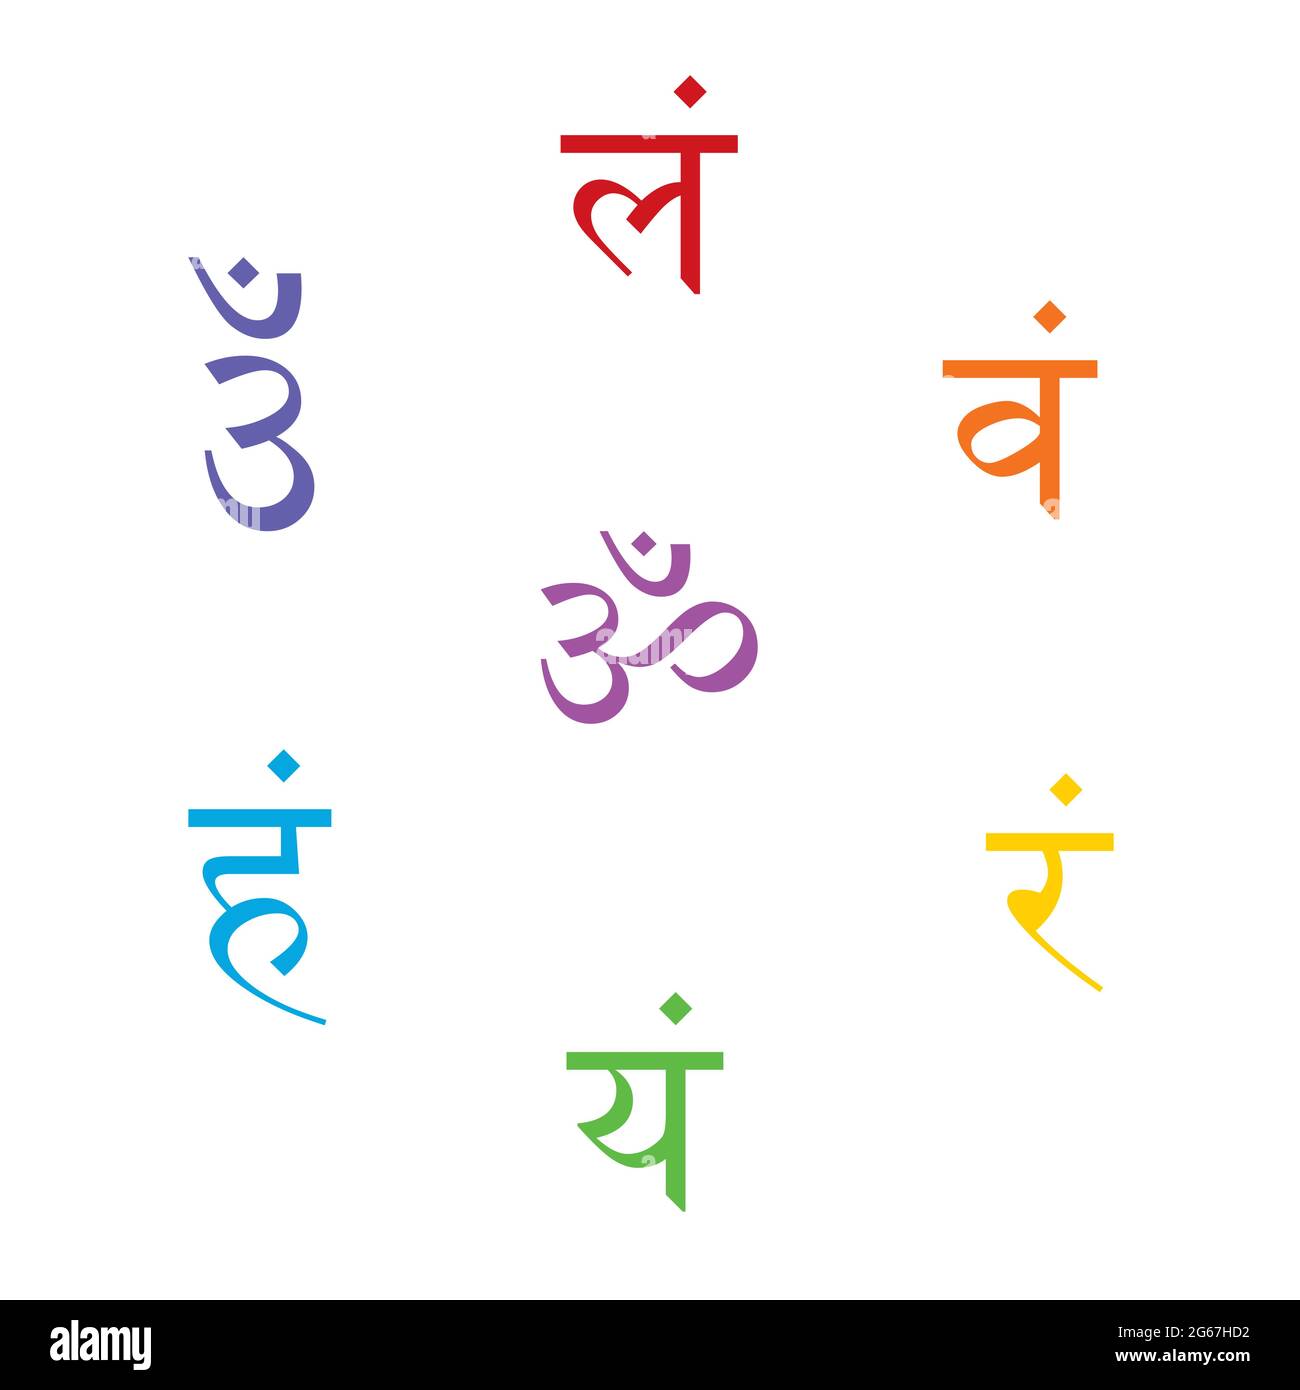 Les sept mantras bija avec chakras ensemble Sanskrit coloré Letoig isolé sur fond blanc. Illustration de caractère linéaire de l'hindouisme Illustration de Vecteur